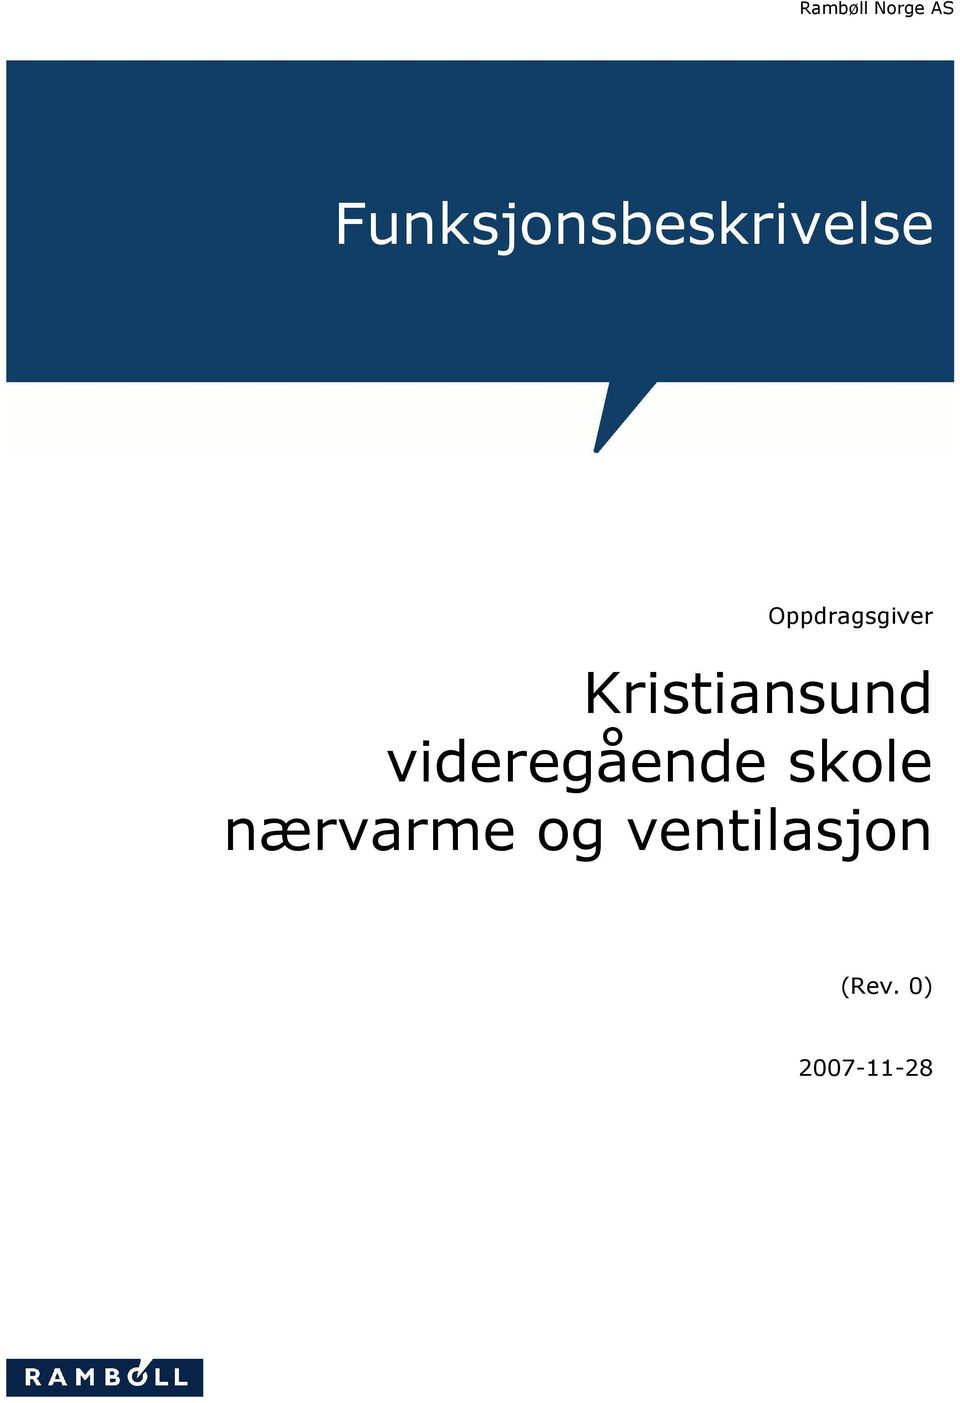 Oppdragsgiver Kristiansund